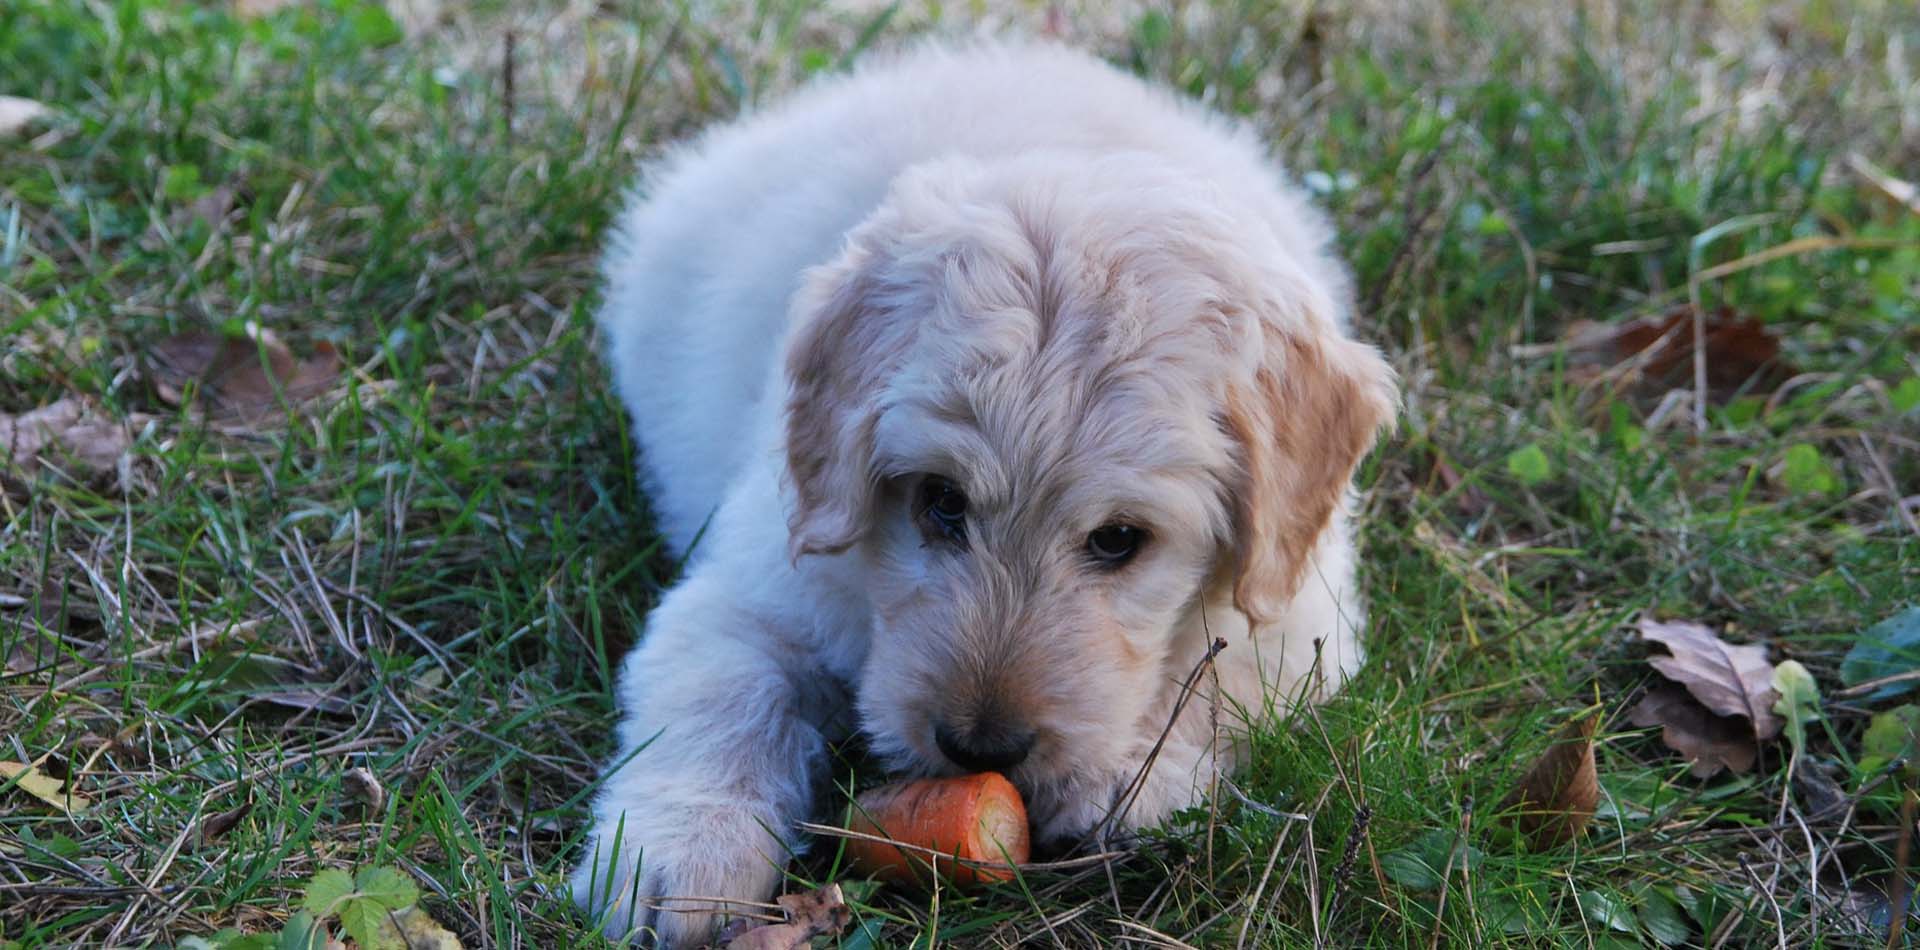 Weisser Hund liegt auf einer Wiese und isst an einer Karotte.